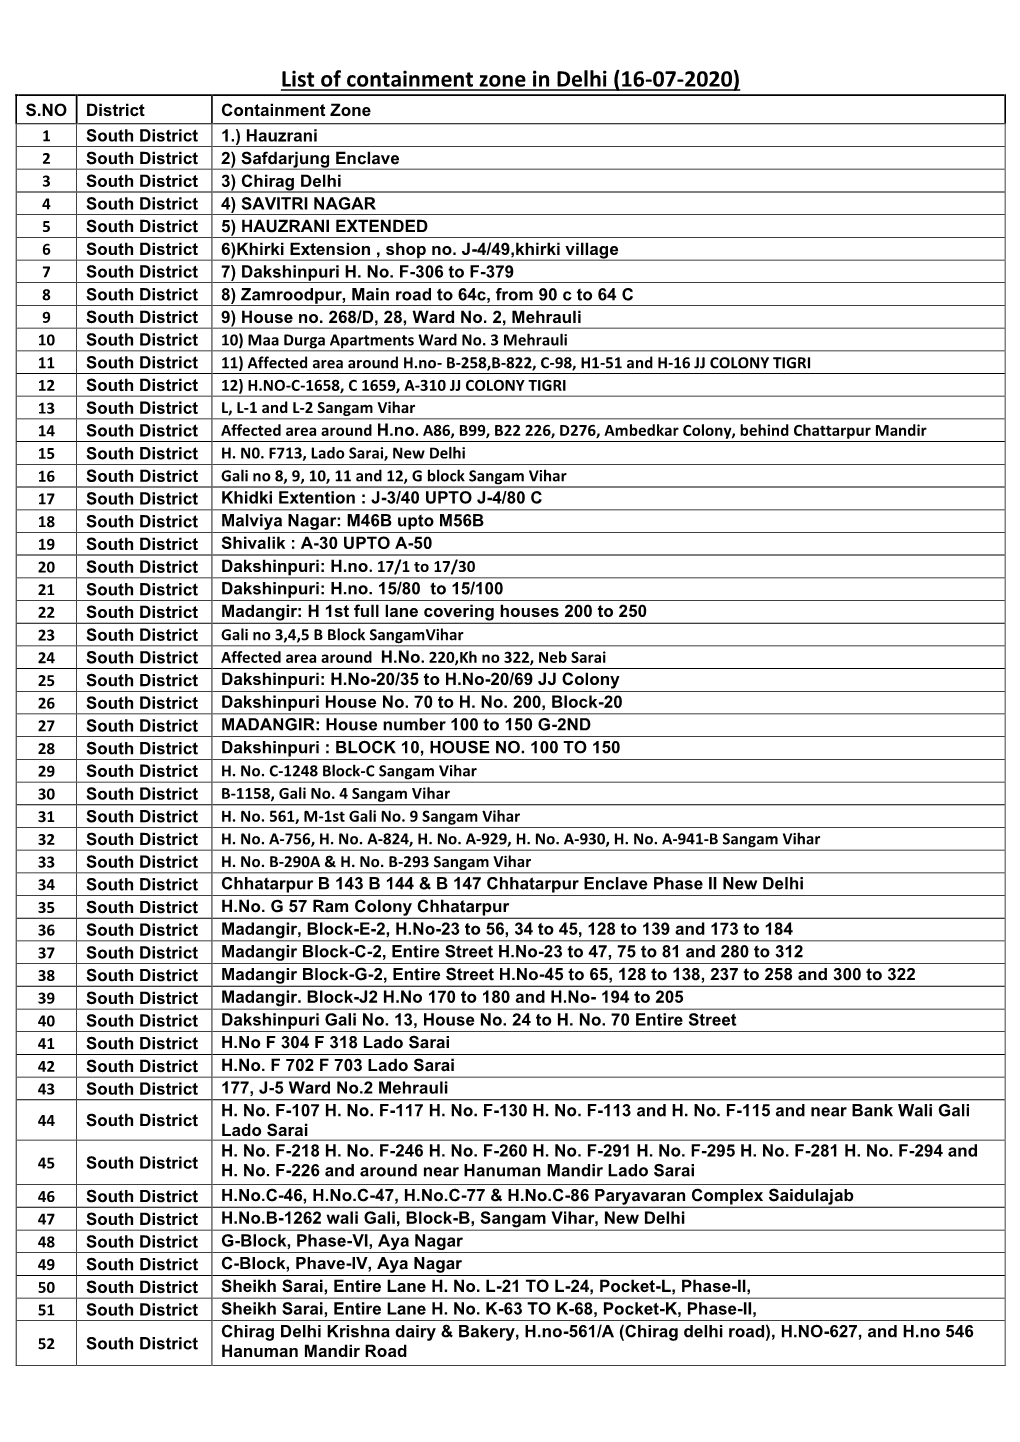 List of Containment Zone in Delhi (16-07-2020)